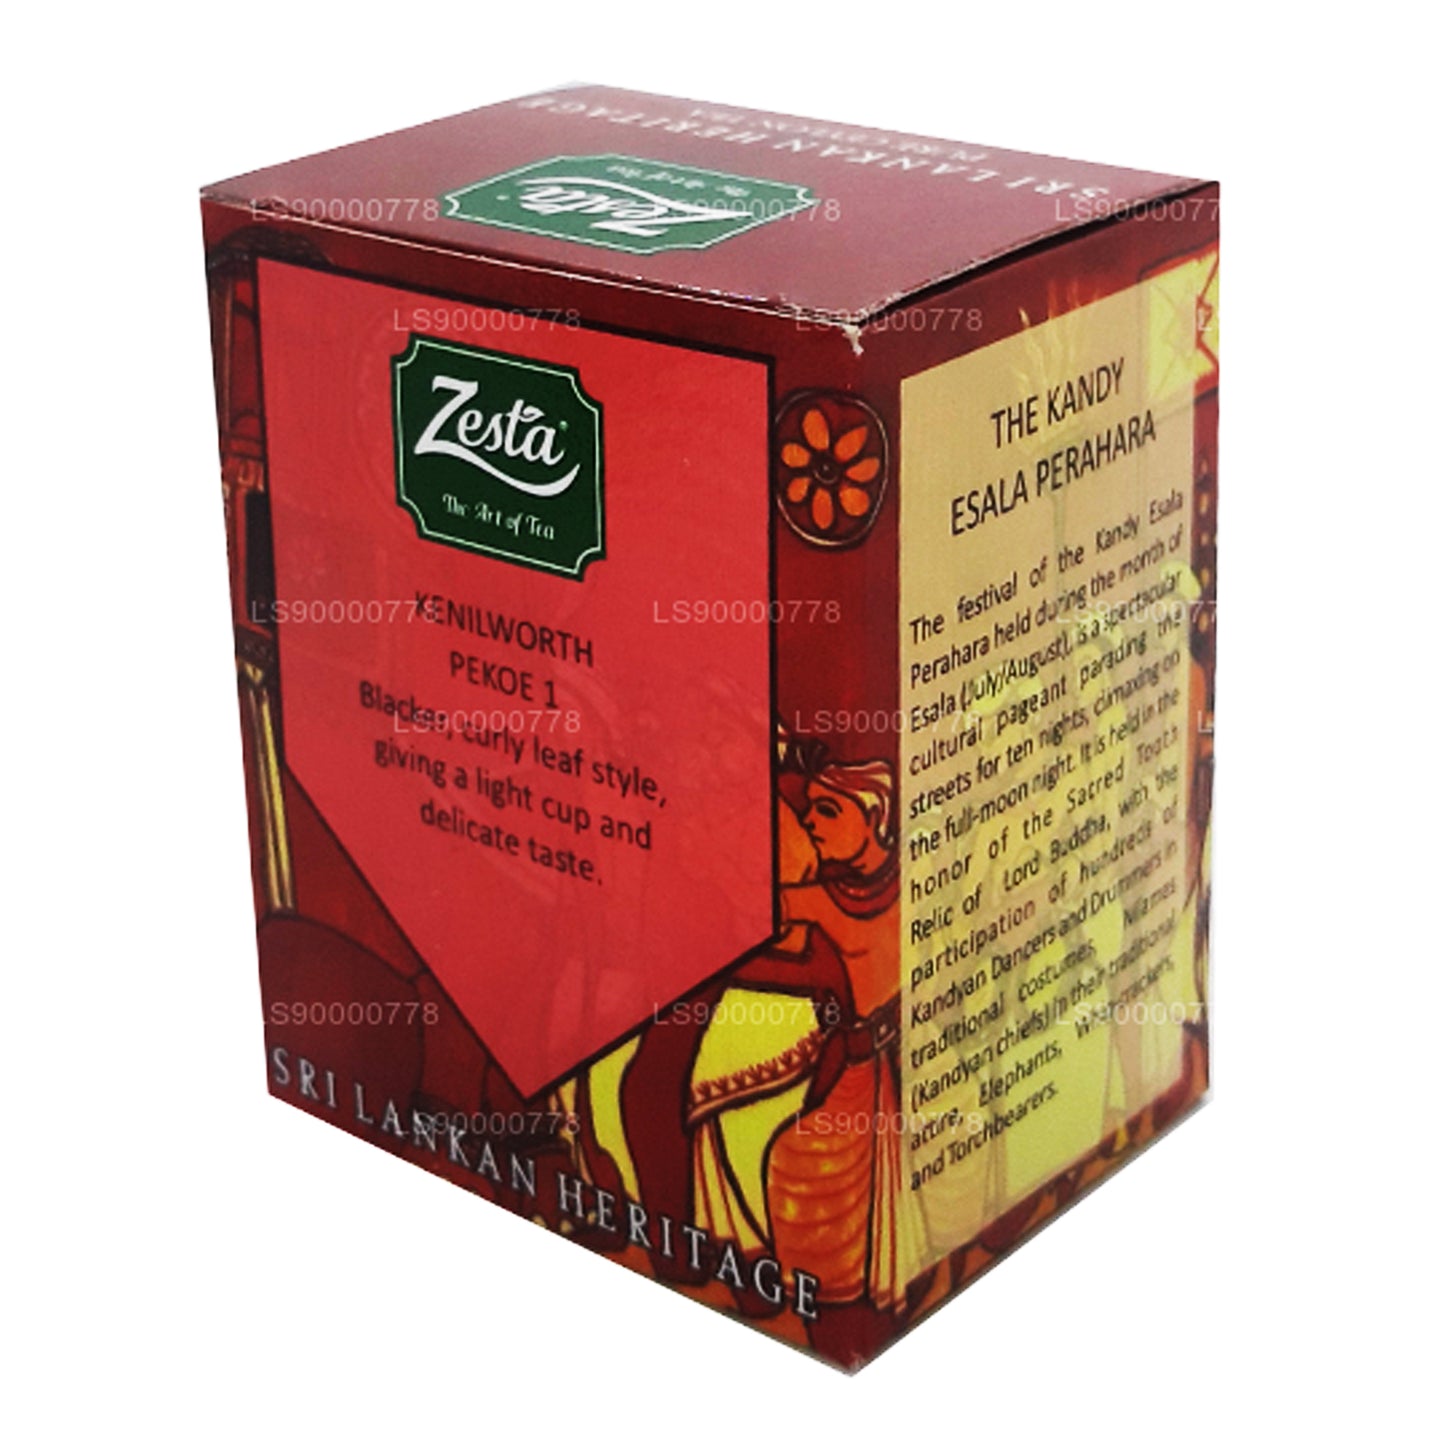 Zesta Sri Lanka Mirası Saf Seylan Çayı Kenilworth PEKOE 1 (100g)